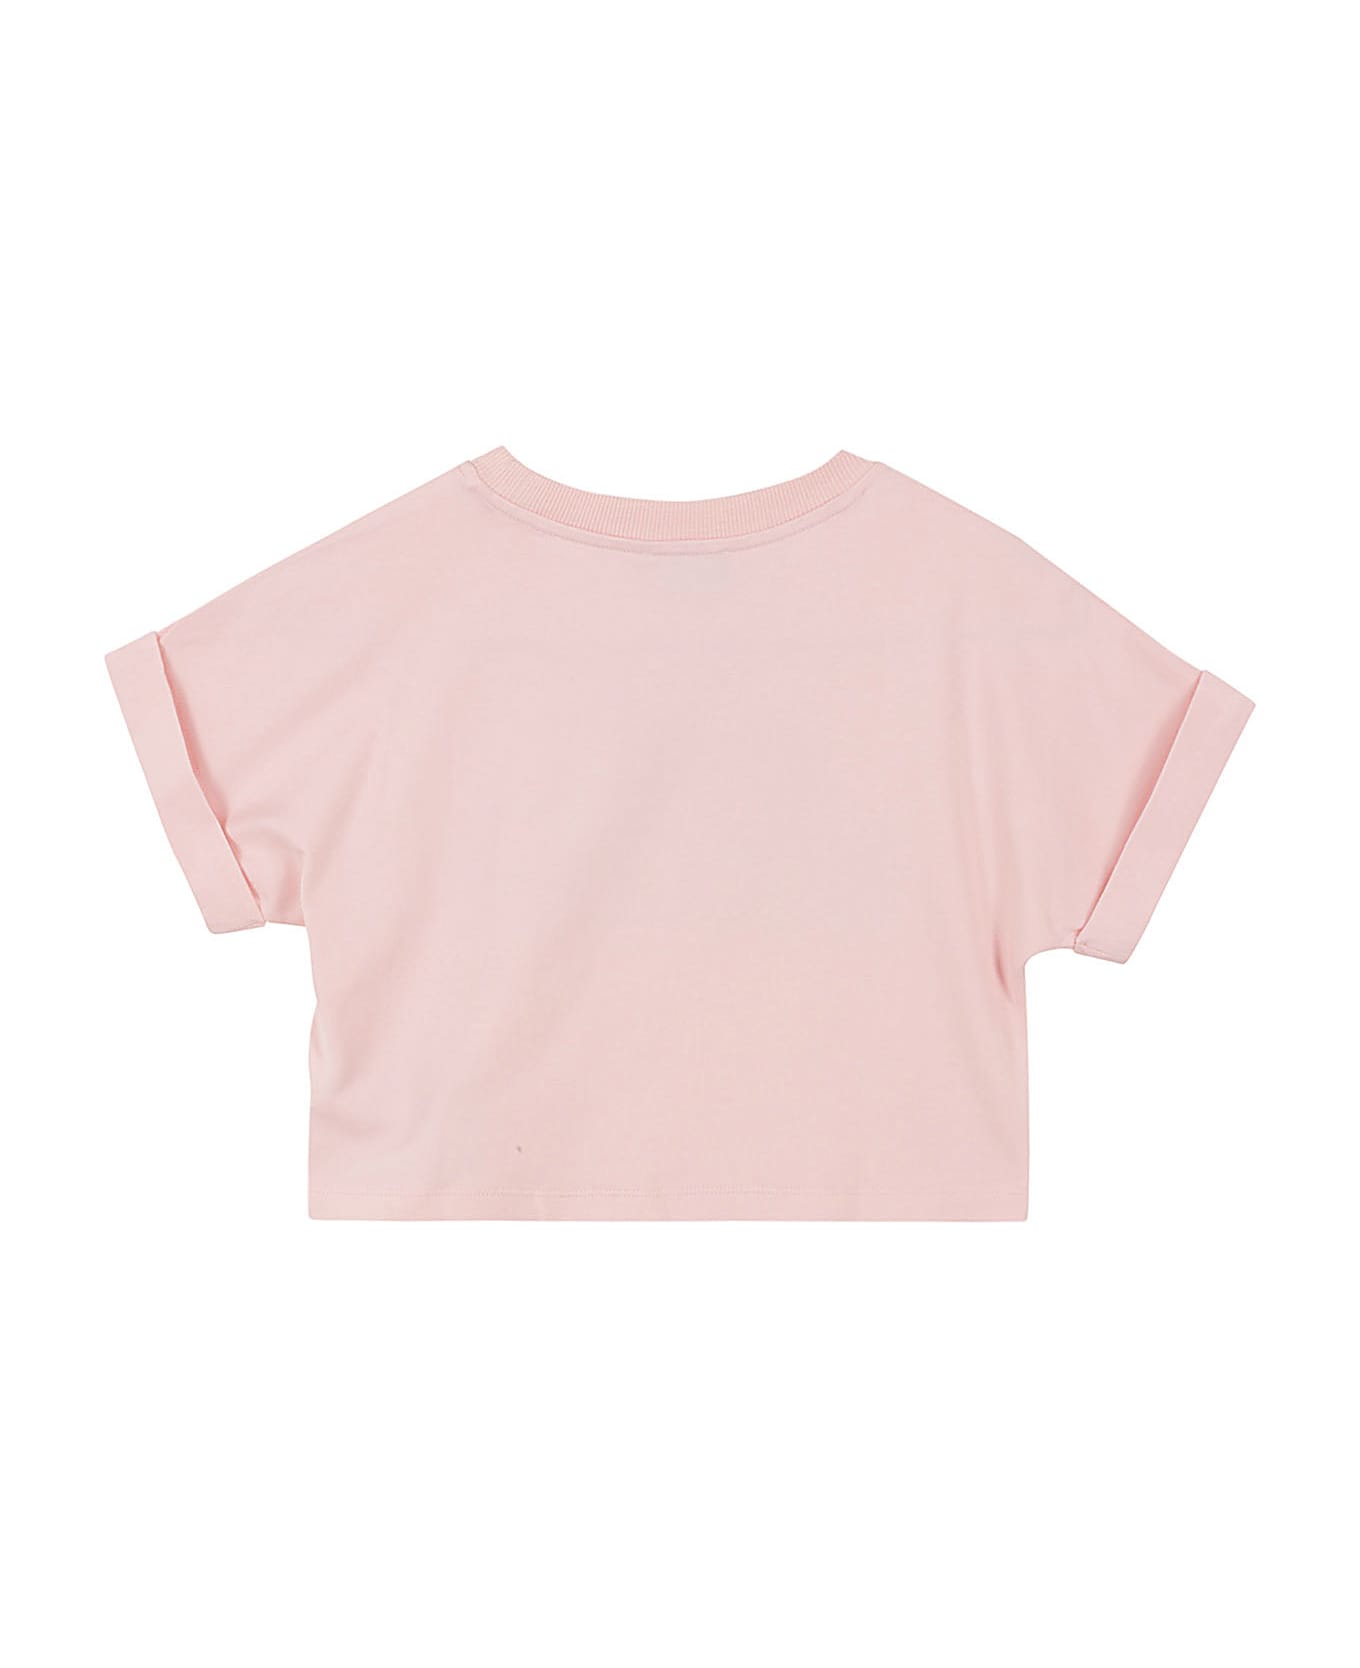 Moschino Tshirt Addition - Sugar Rose